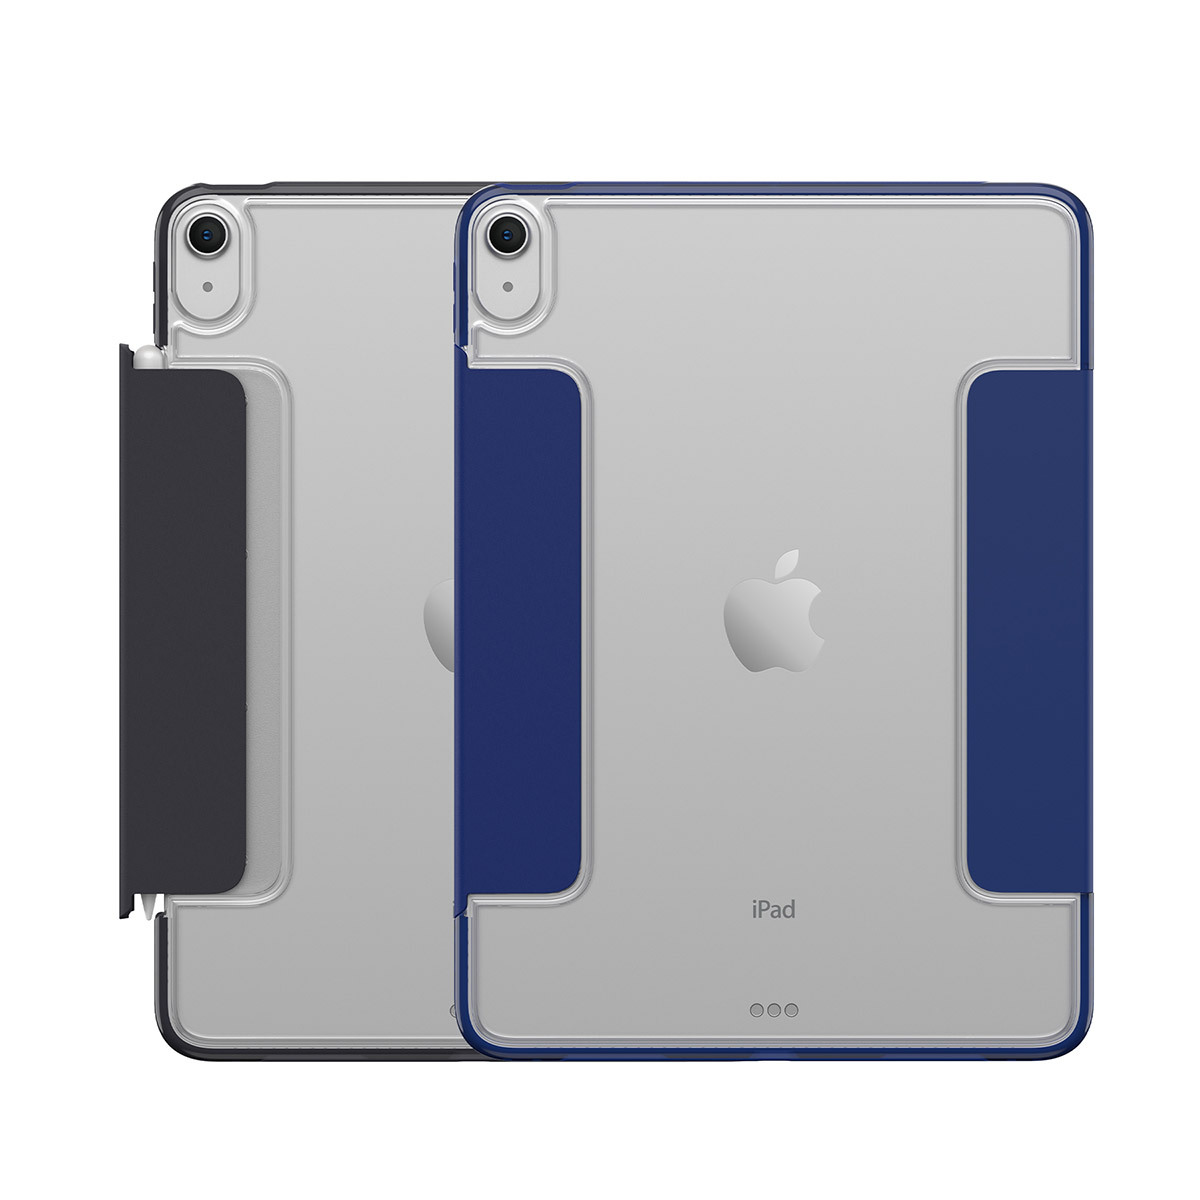 오터박스 시메트리 360 엘리트 아이패드 케이스 - iPad Air 5세대용